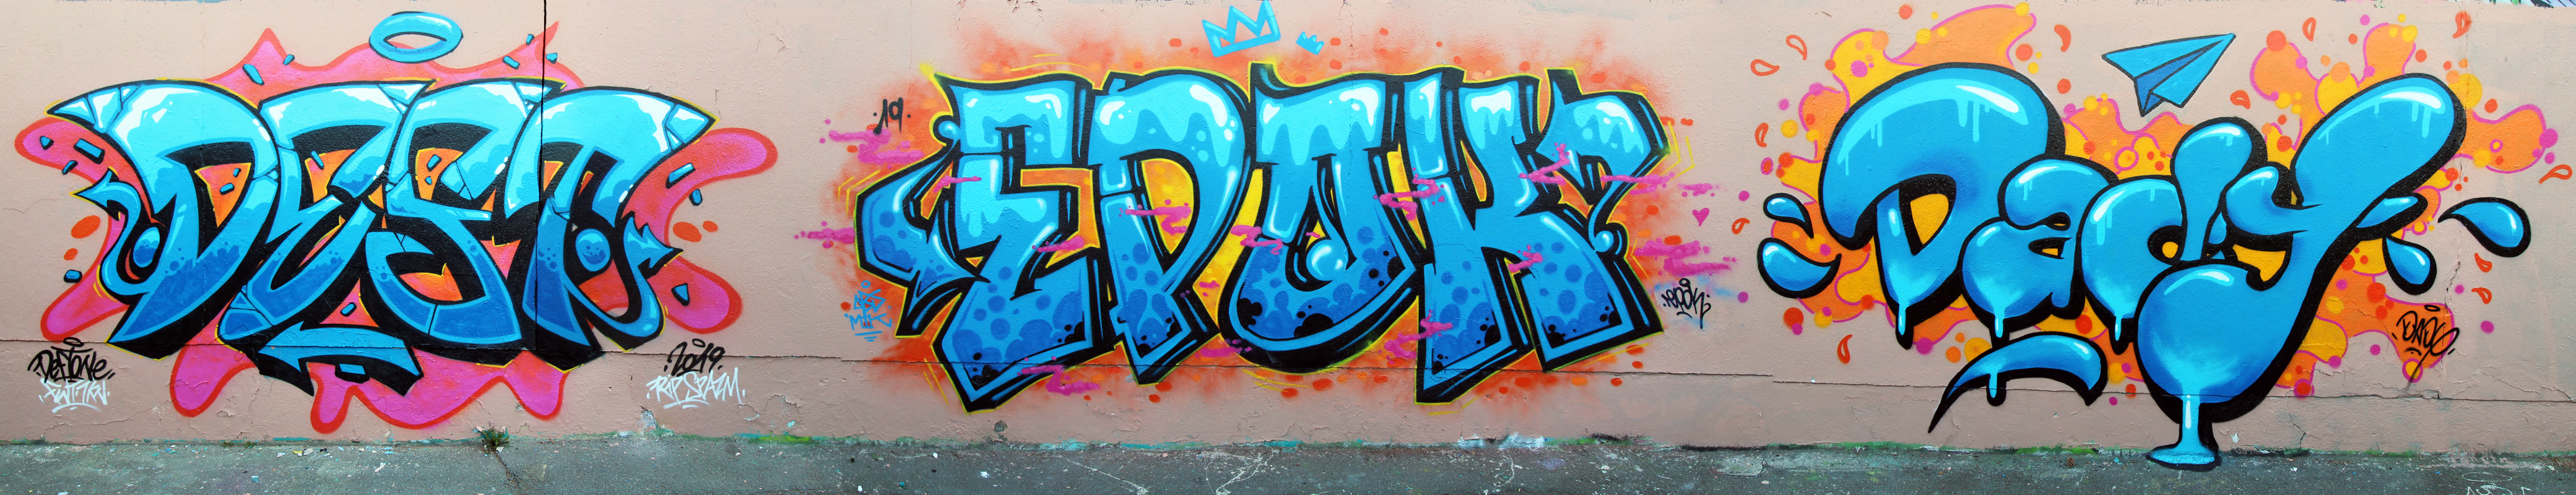 Fresque graffiti Riom - Artiste : Deft, Epok, Dady